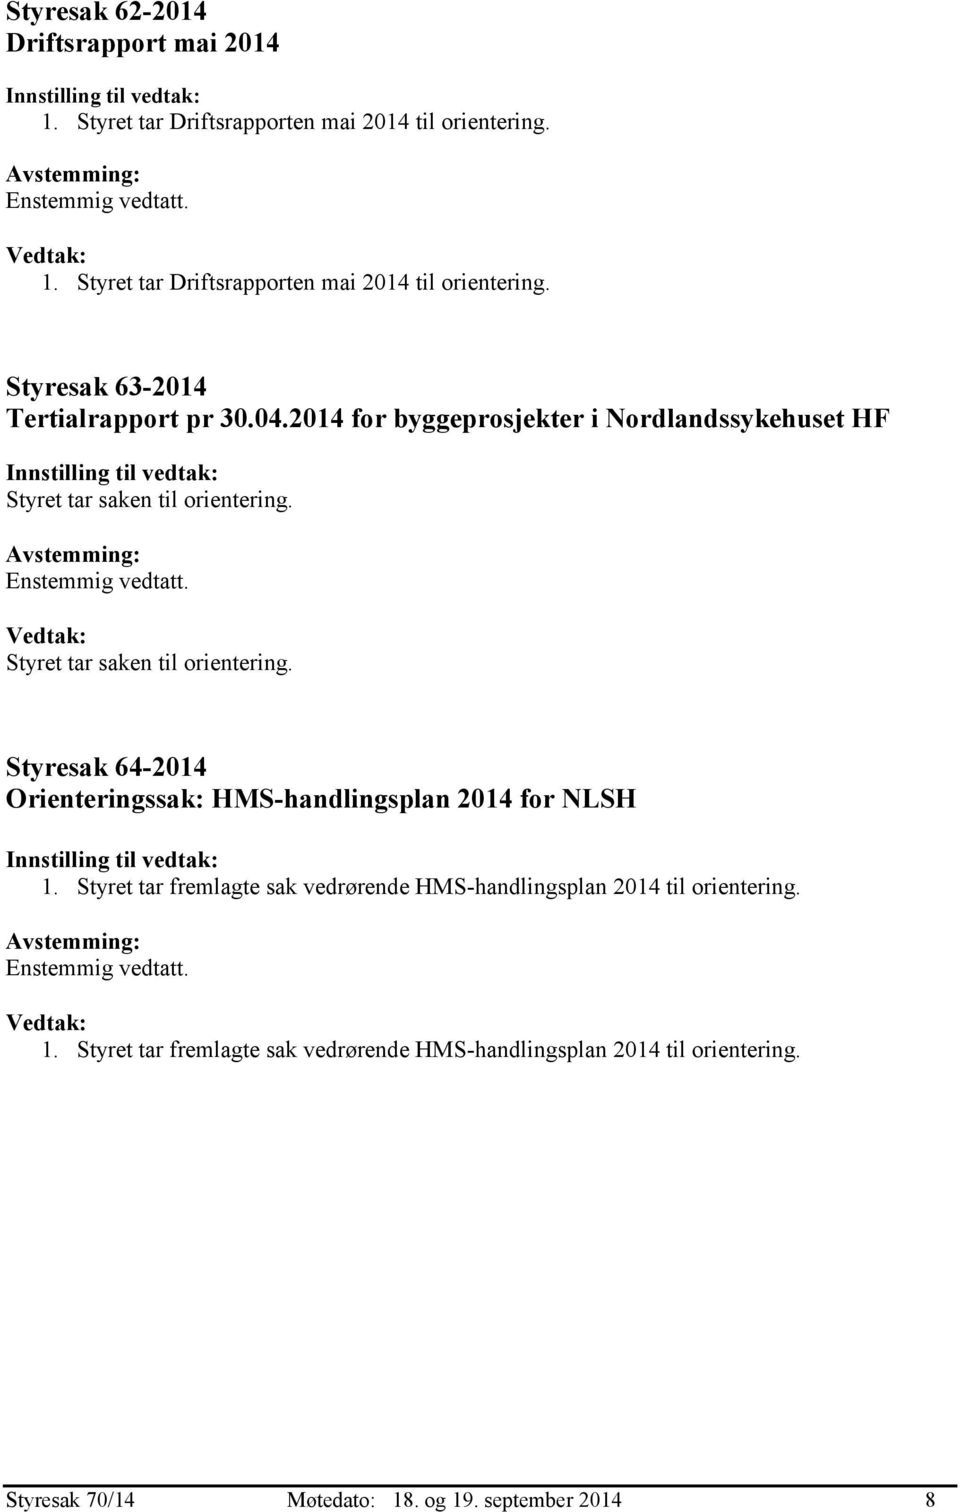 2014 for byggeprosjekter i Nordlandssykehuset HF Styresak 64-2014 Orienteringssak: HMS-handlingsplan 2014 for NLSH 1.